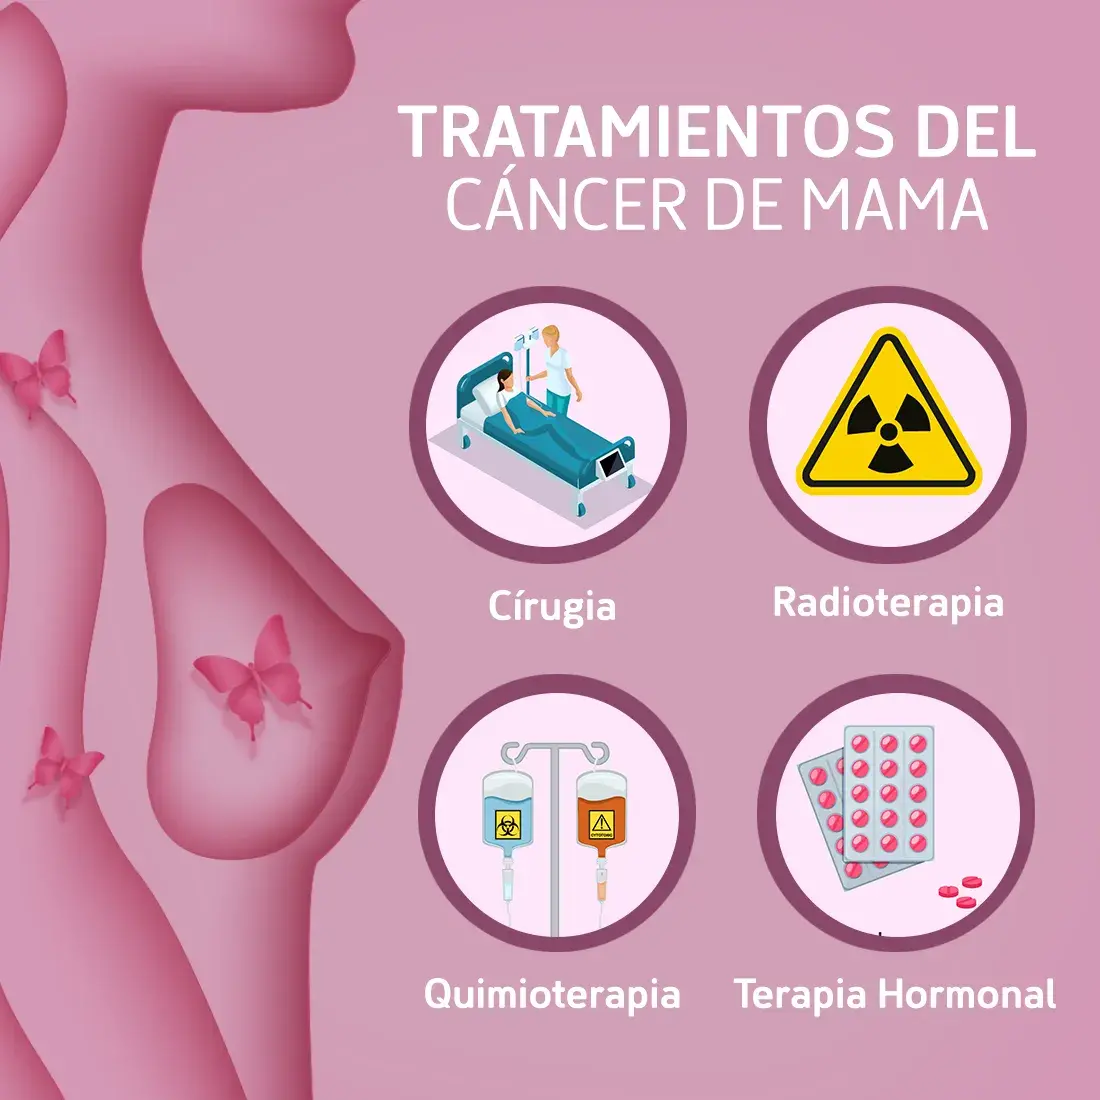 Tipos de tratamientos del cáncer de mama (cirugía, radioterpia, quimioterapia, terapia hormonal)